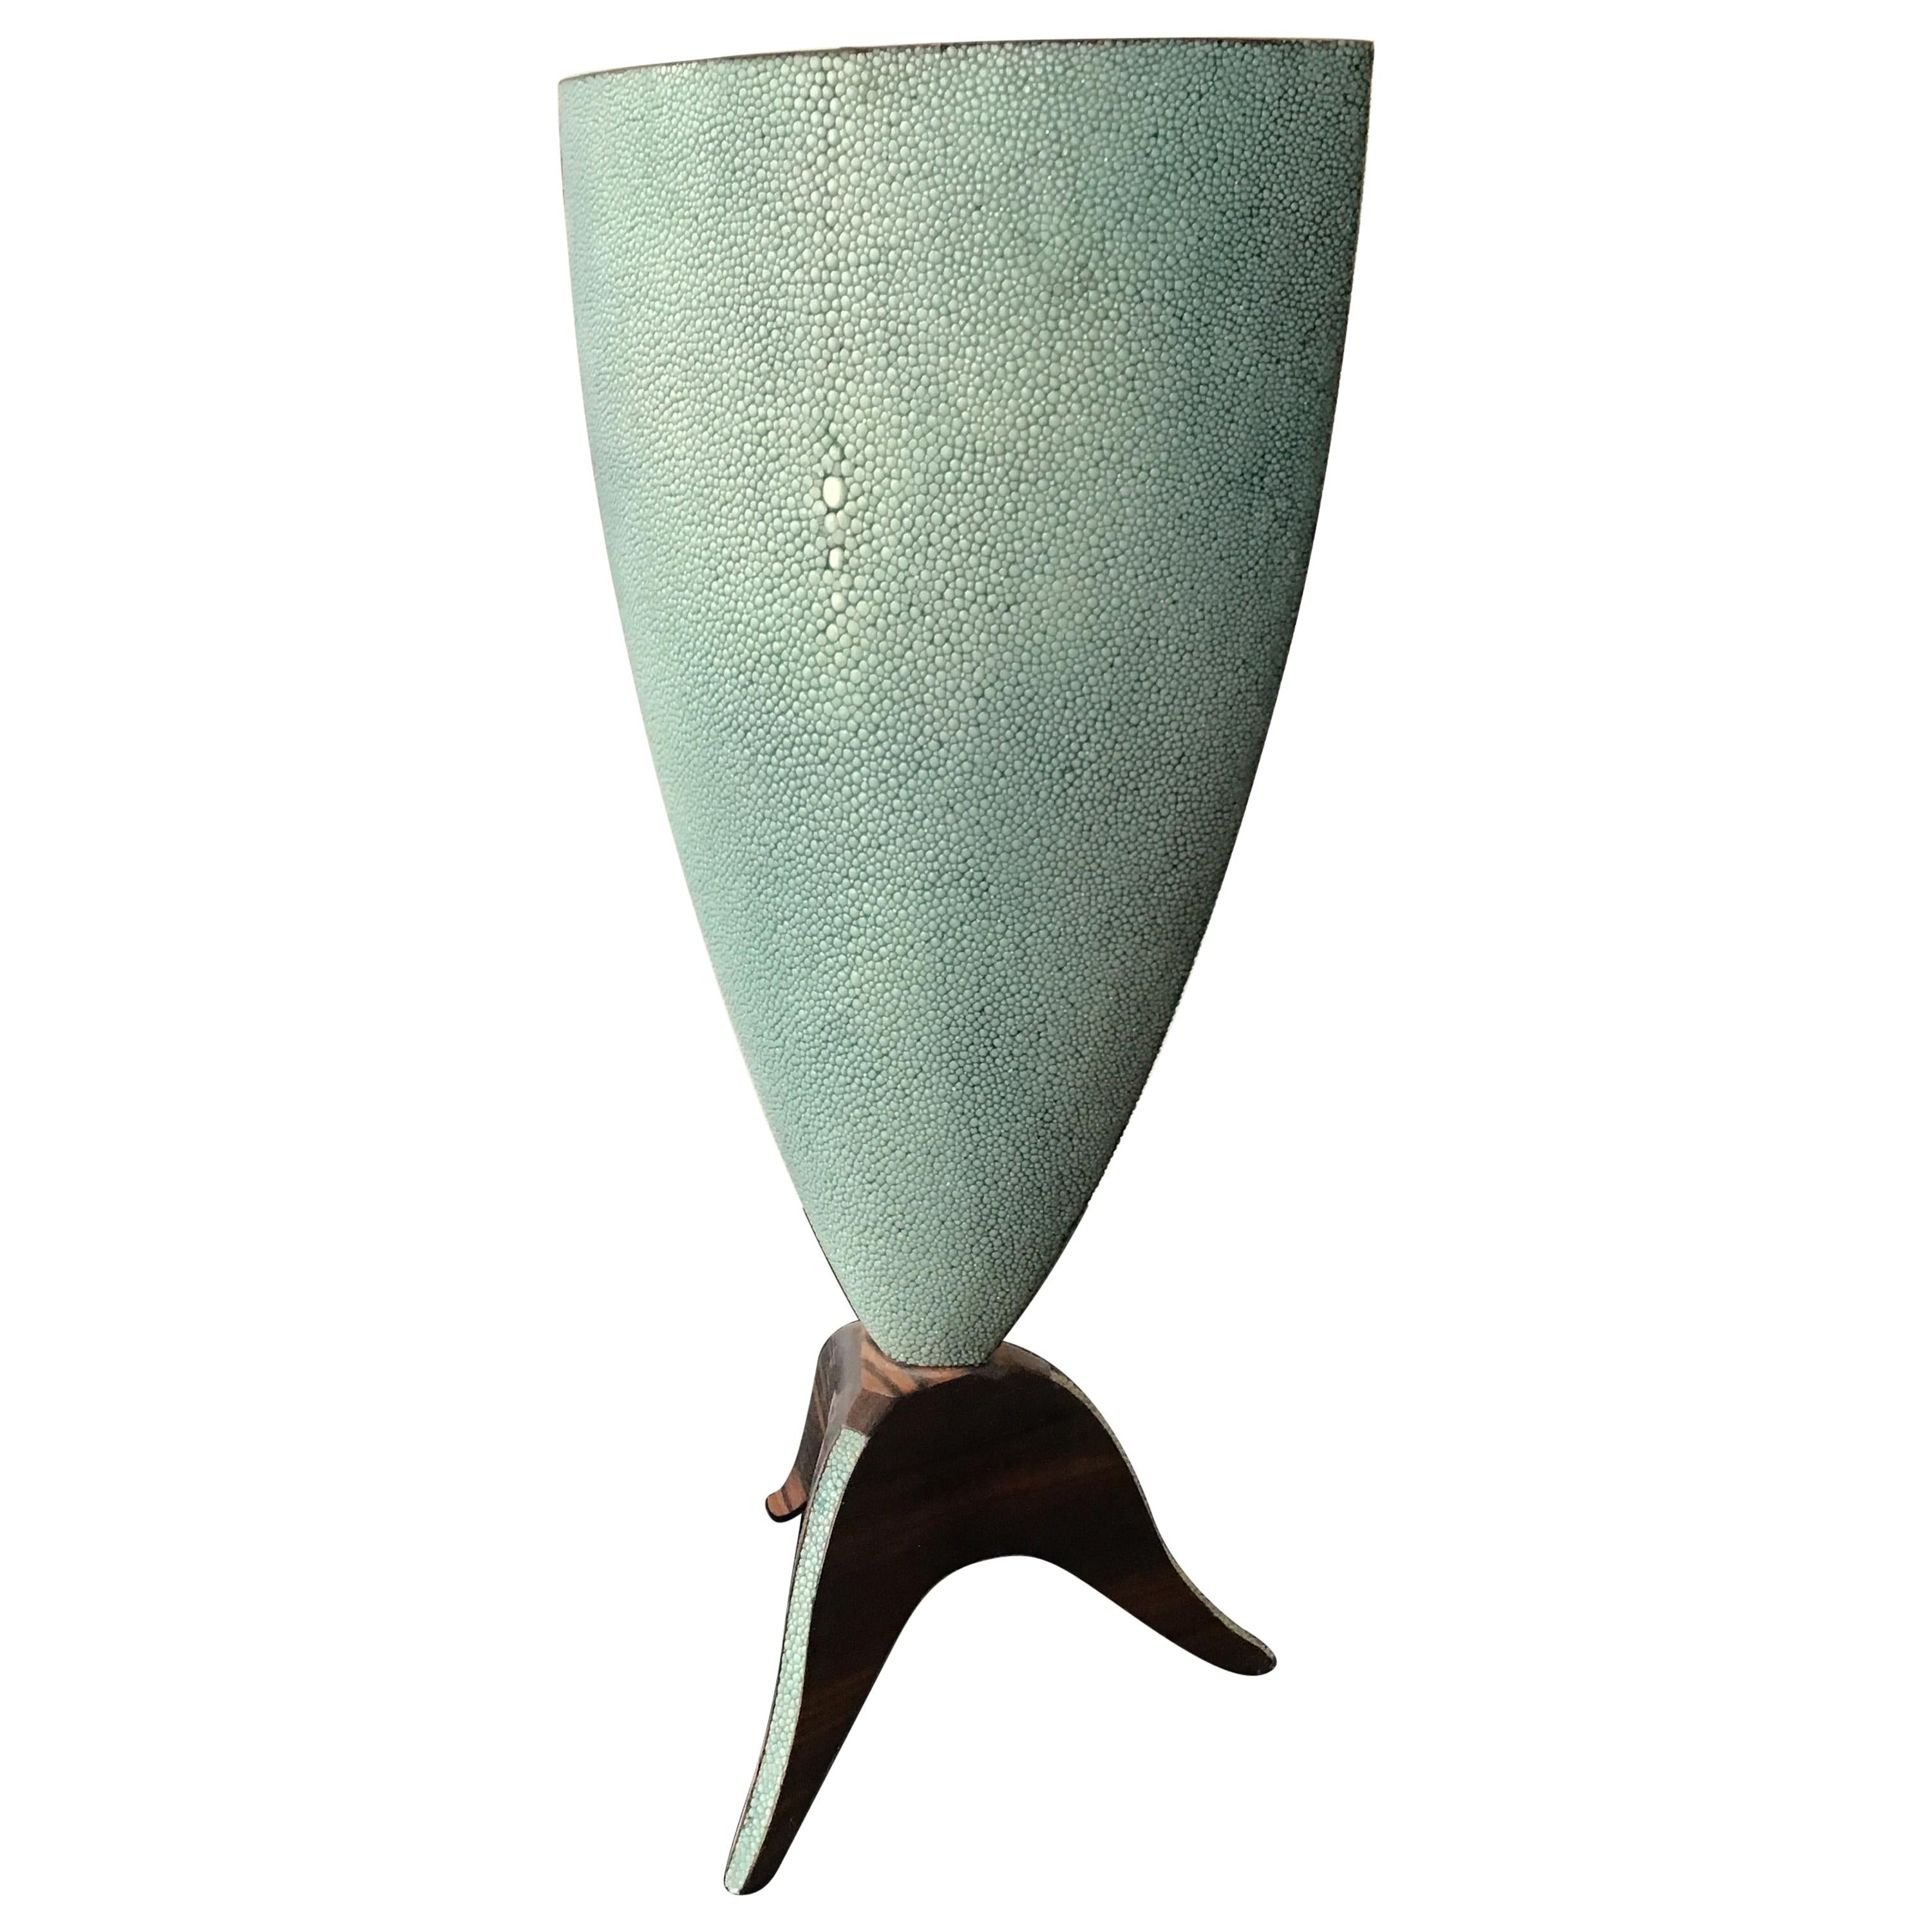 R & Y Augousti Shagreen Vase